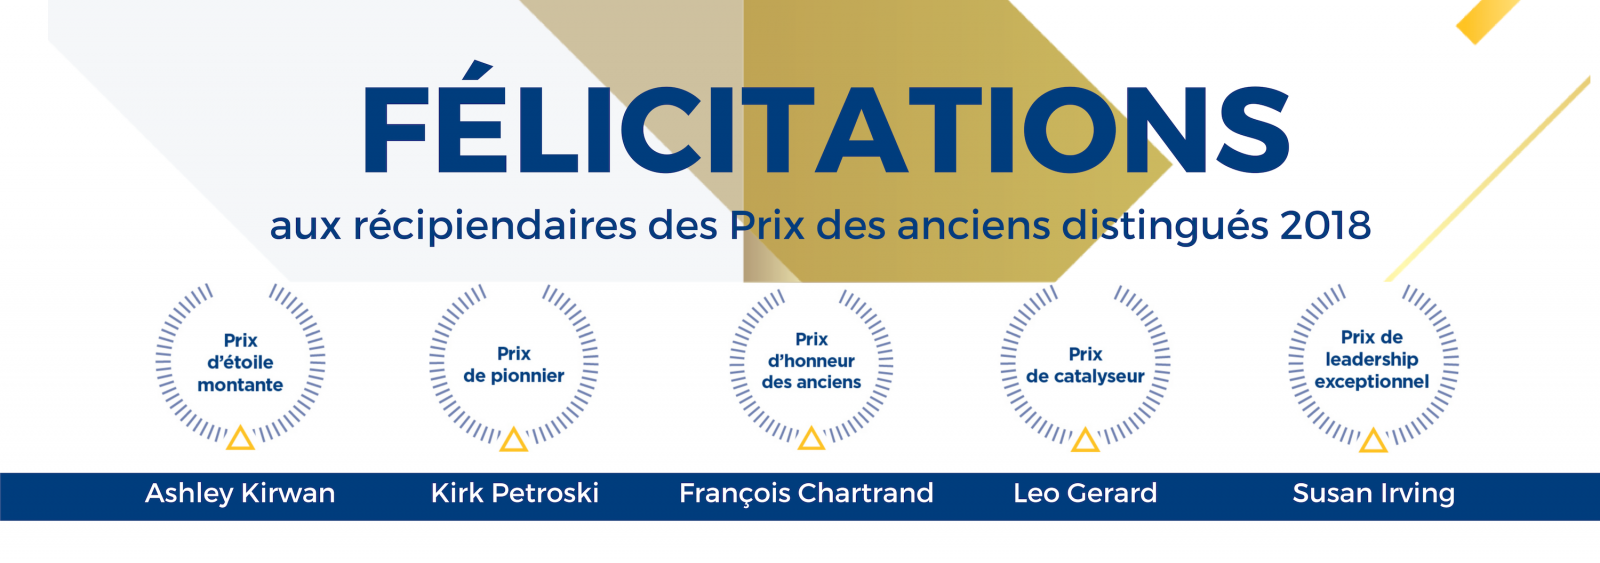 Félicitations aux récipiendaires des Prix des anciens élèves distingués 2018.  